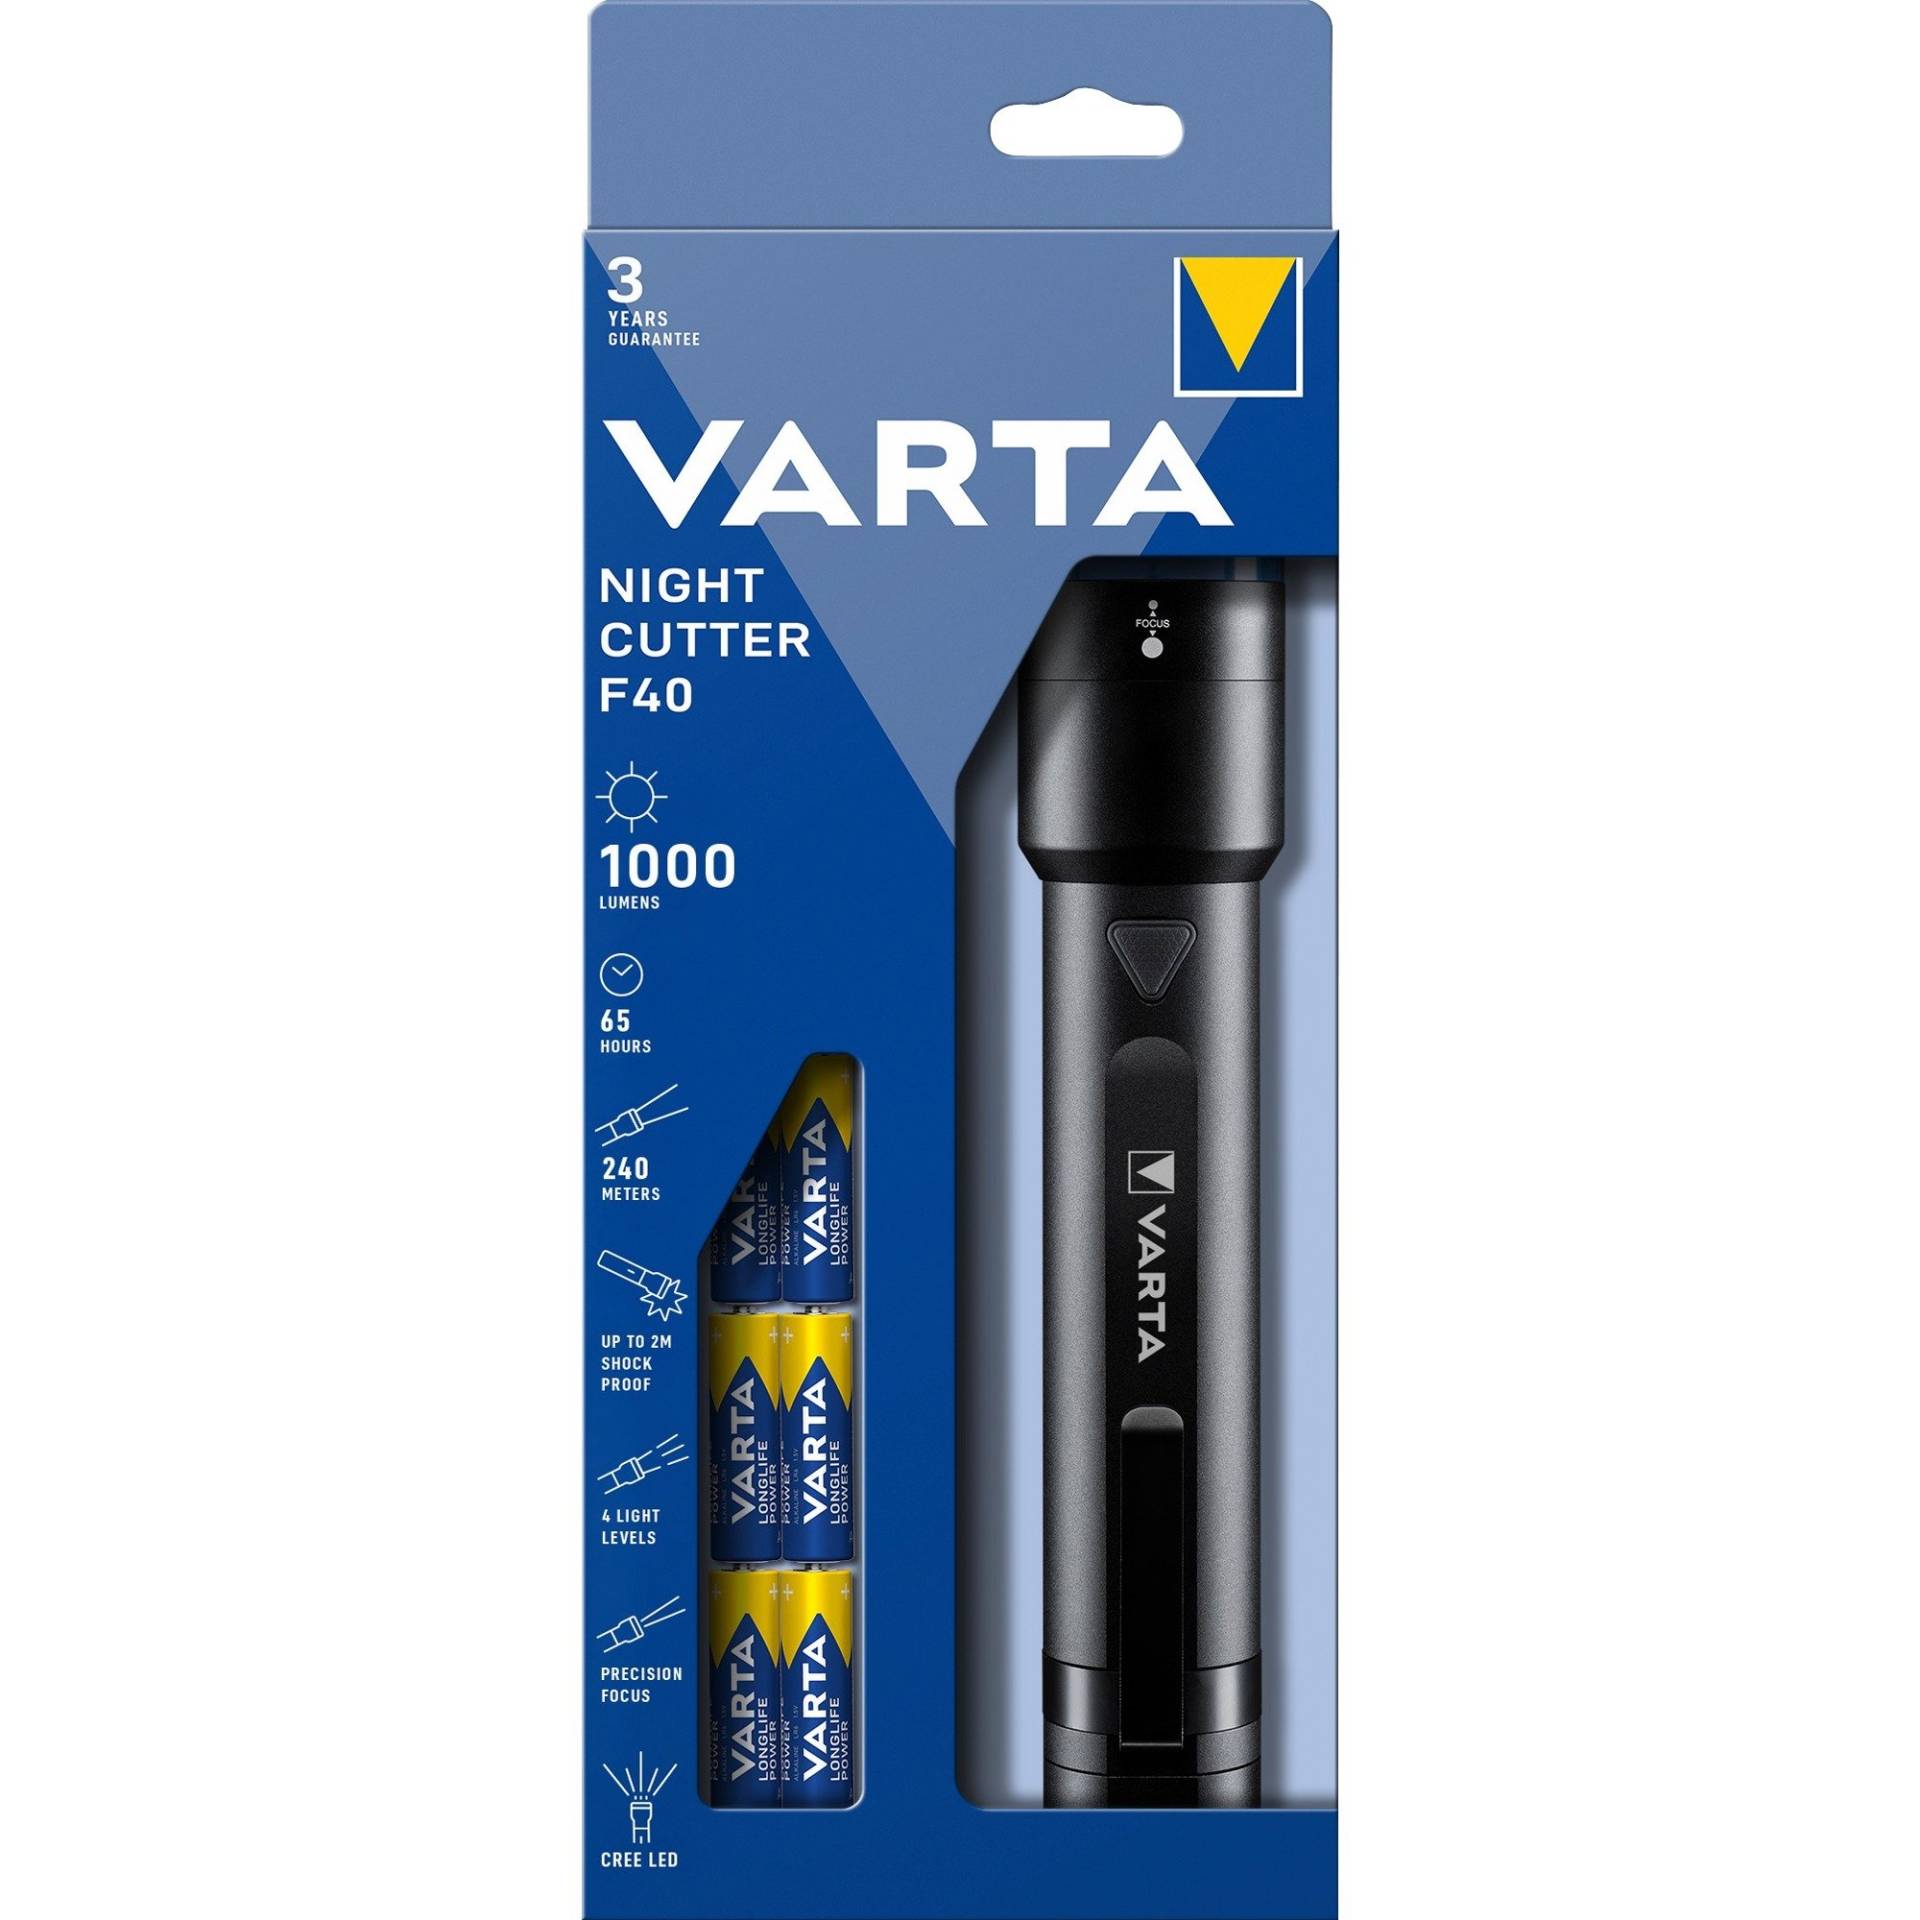 Night Cutter F40, Taschenlampe von Varta